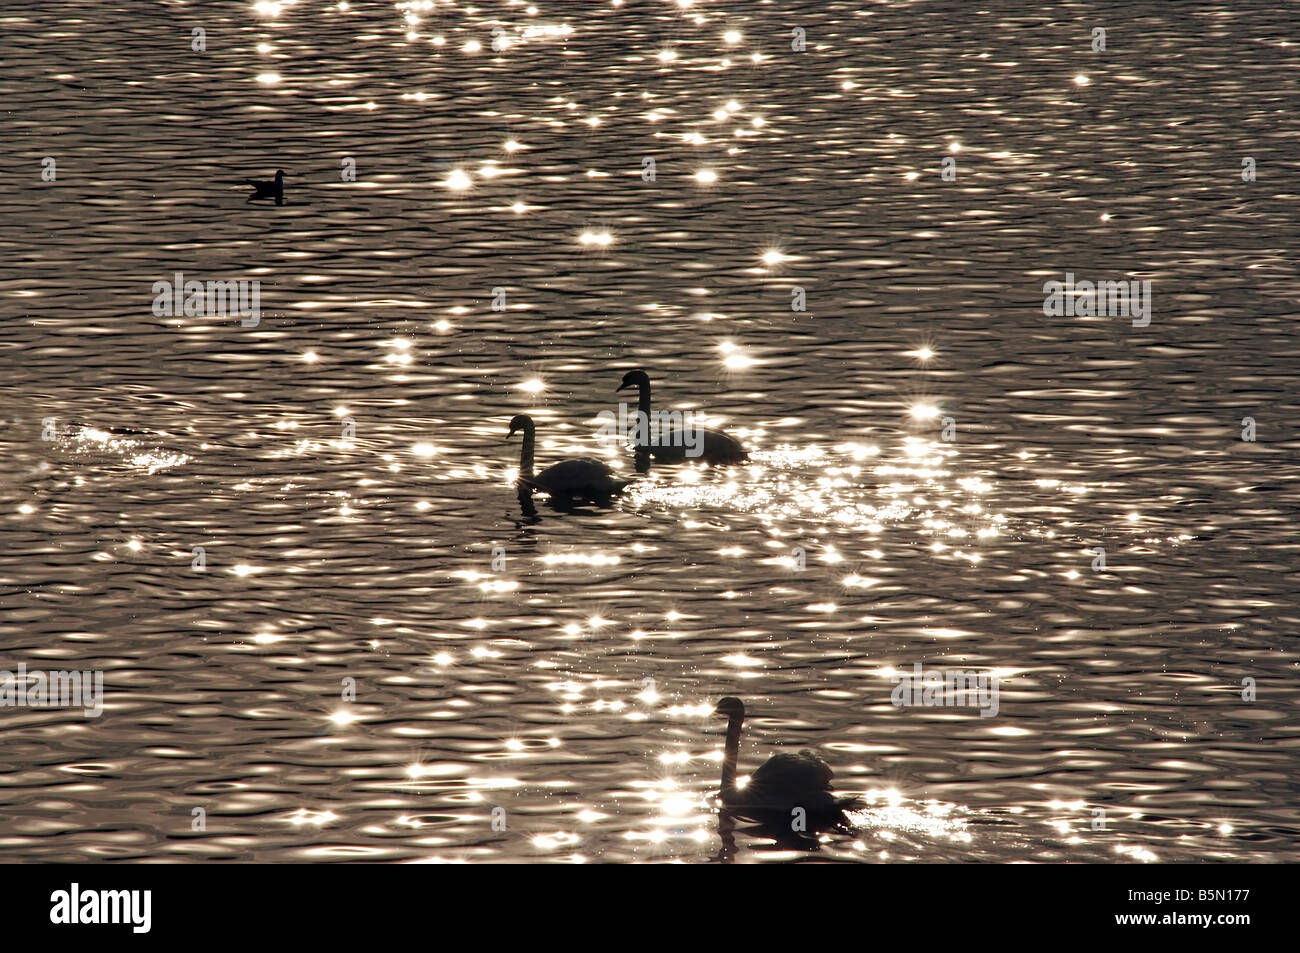 El lago de los Cisnes - shot de el Cisne en el agua en penumbra Foto de stock